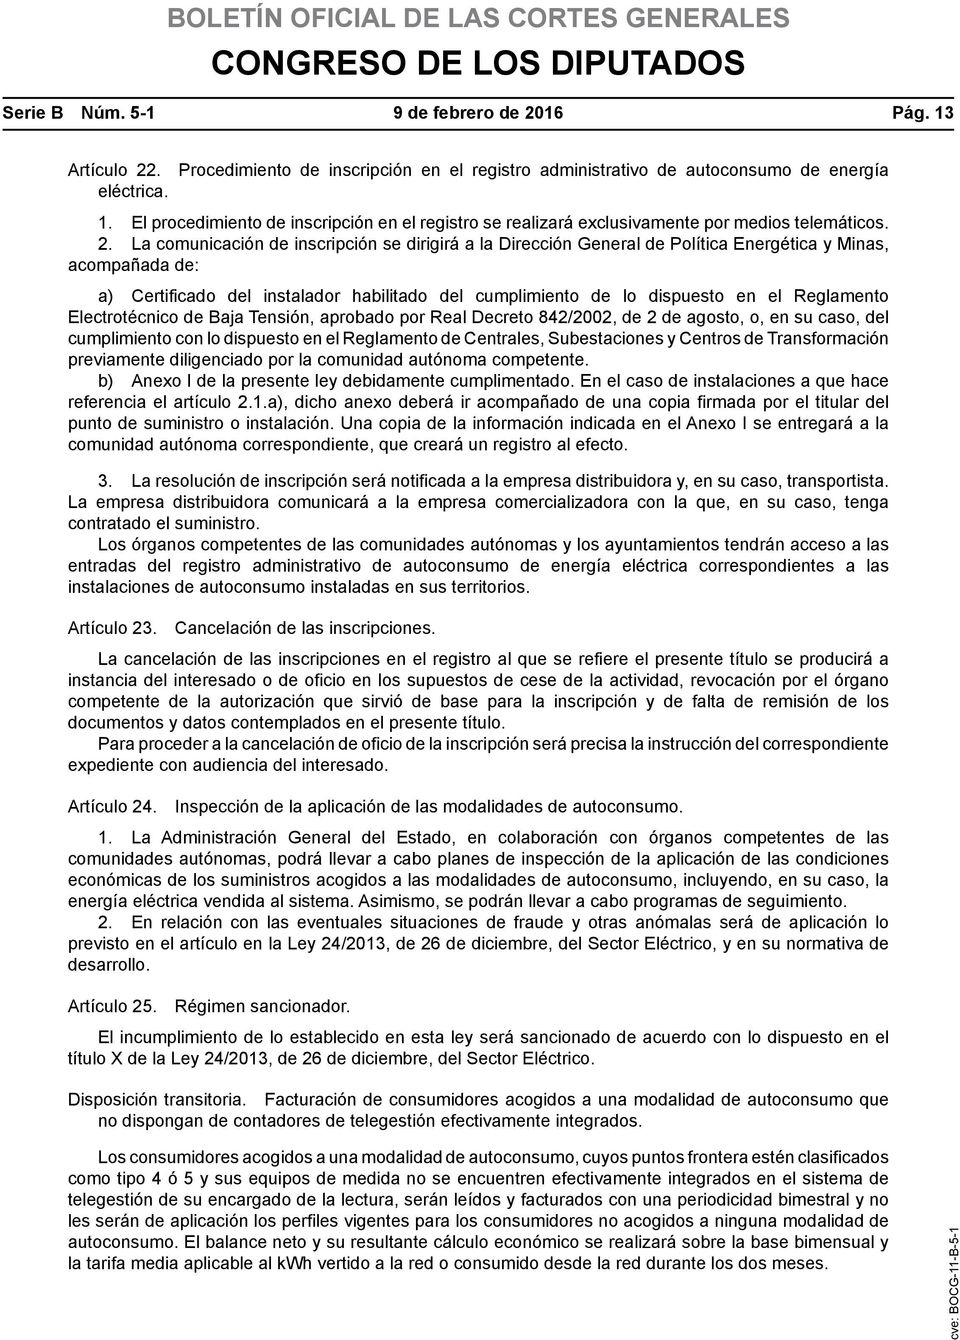 Reglamento Electrotécnico de Baja Tensión, aprobado por Real Decreto 842/2002, de 2 de agosto, o, en su caso, del cumplimiento con lo dispuesto en el Reglamento de Centrales, Subestaciones y Centros